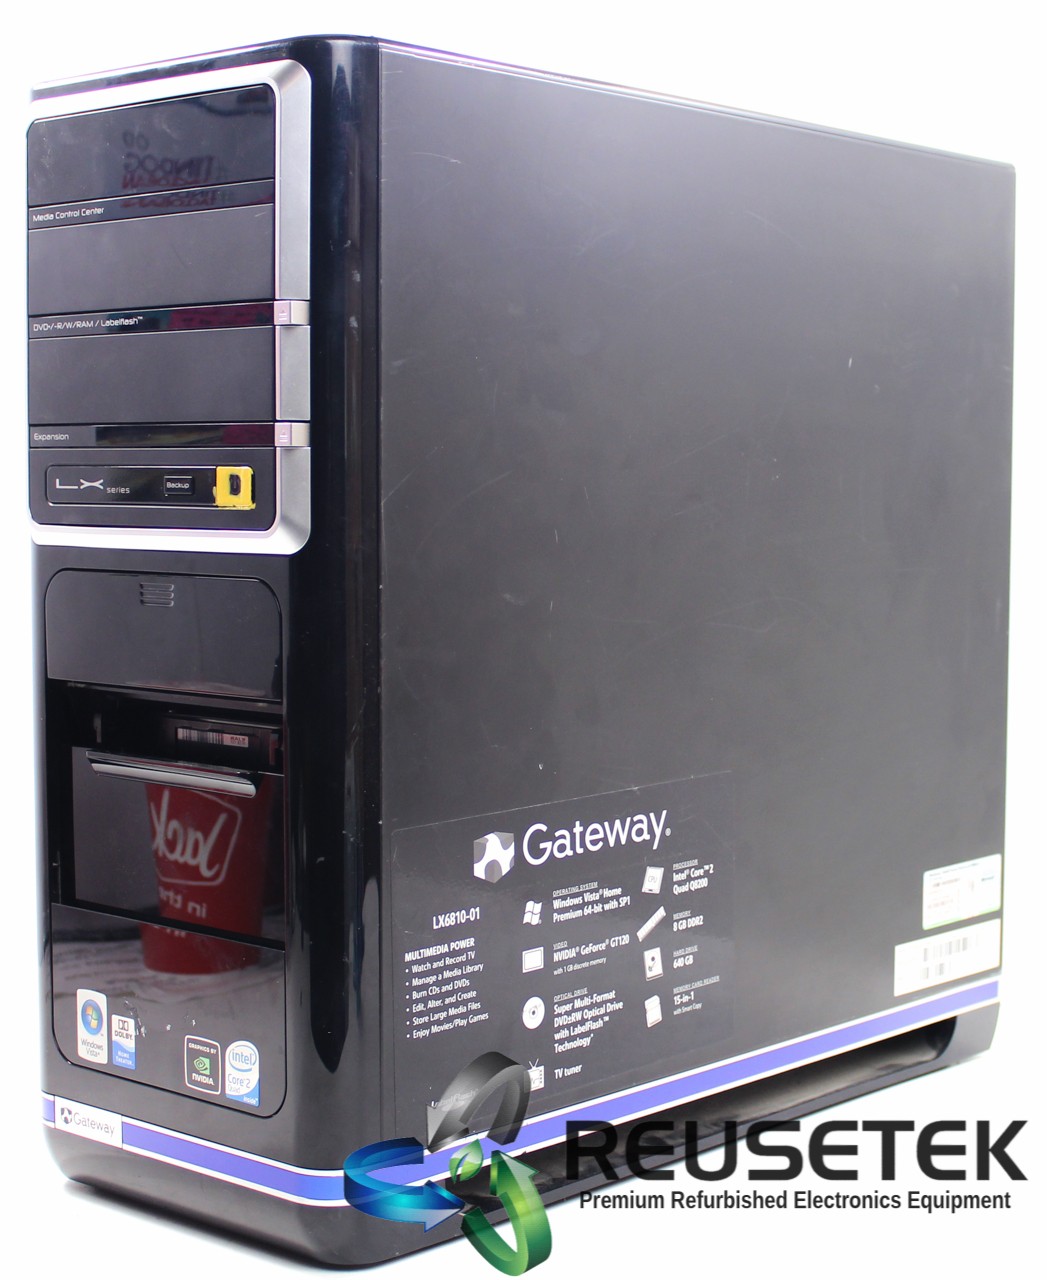 500031077-Gateway LX6810-01 Desktop PC-image